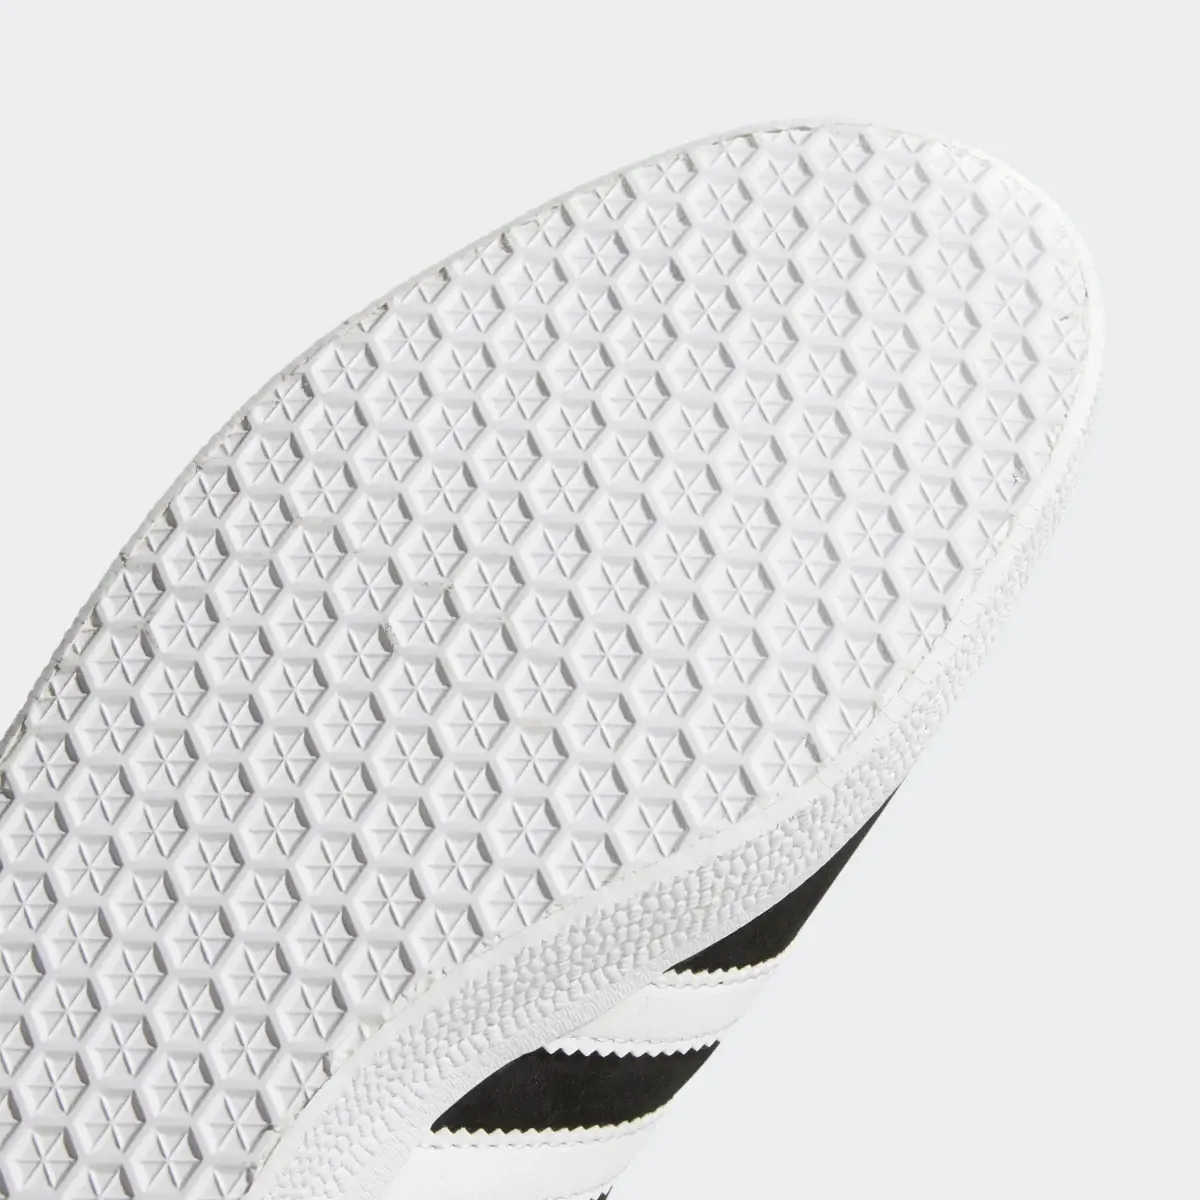 Adidas Gazelle Ayakkabı. 3